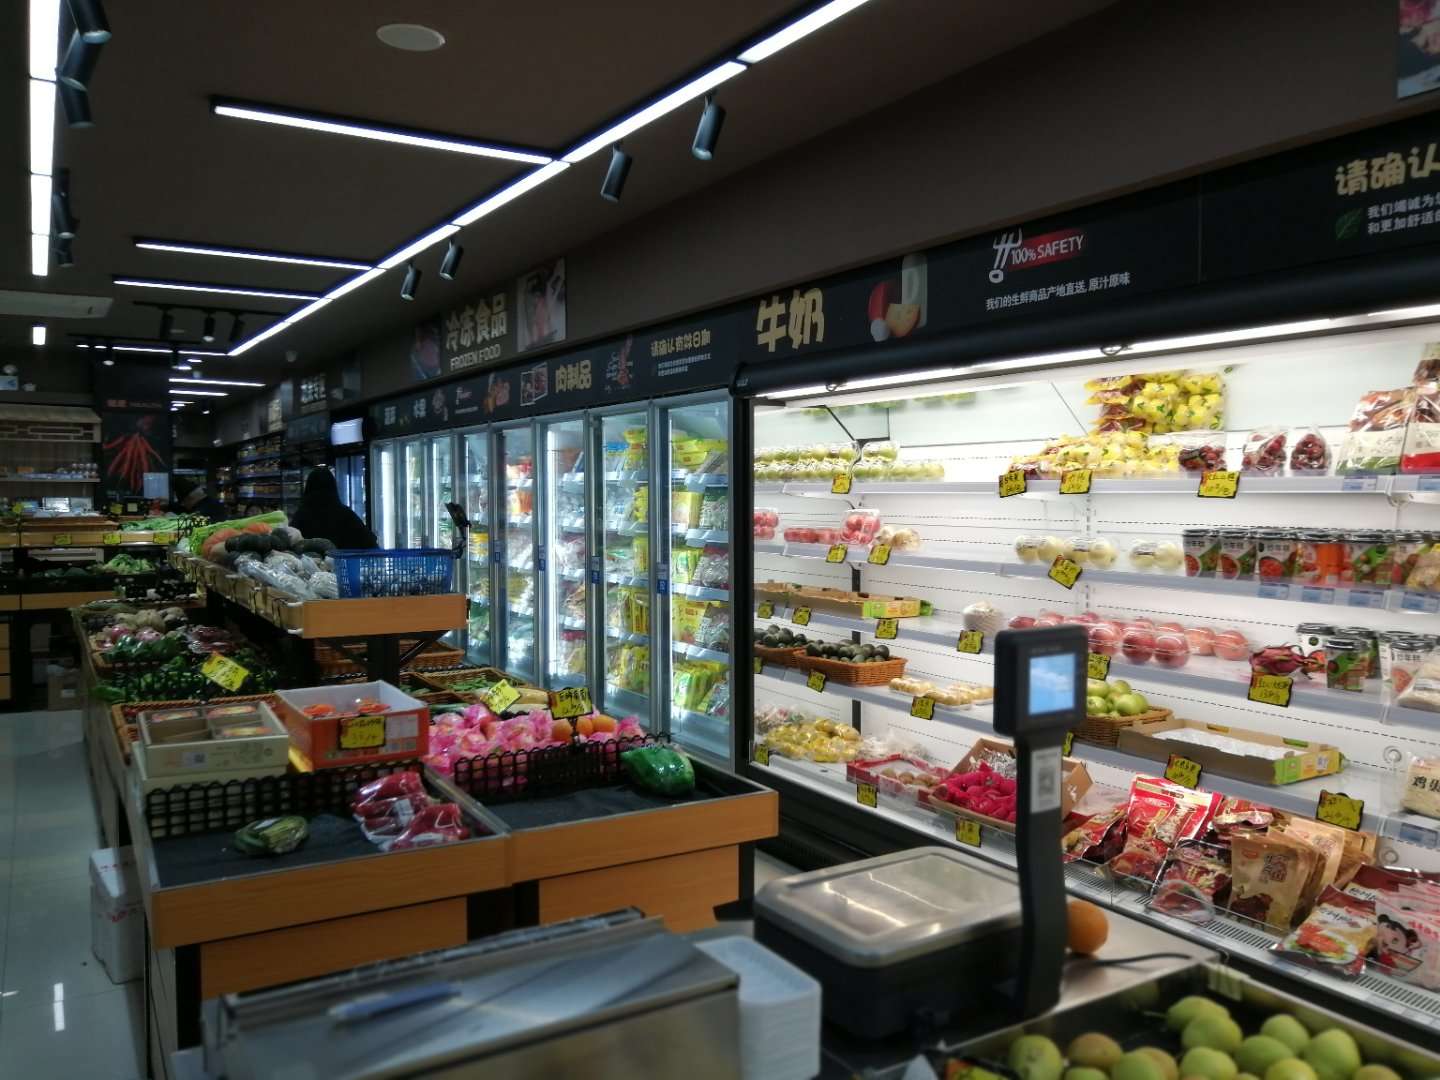 蔬菜冷藏柜 未来雪-W-FMG-12-水果保鲜柜 超市风幕柜 水果店风幕柜 商用冰箱展示柜冰柜 水果柜8